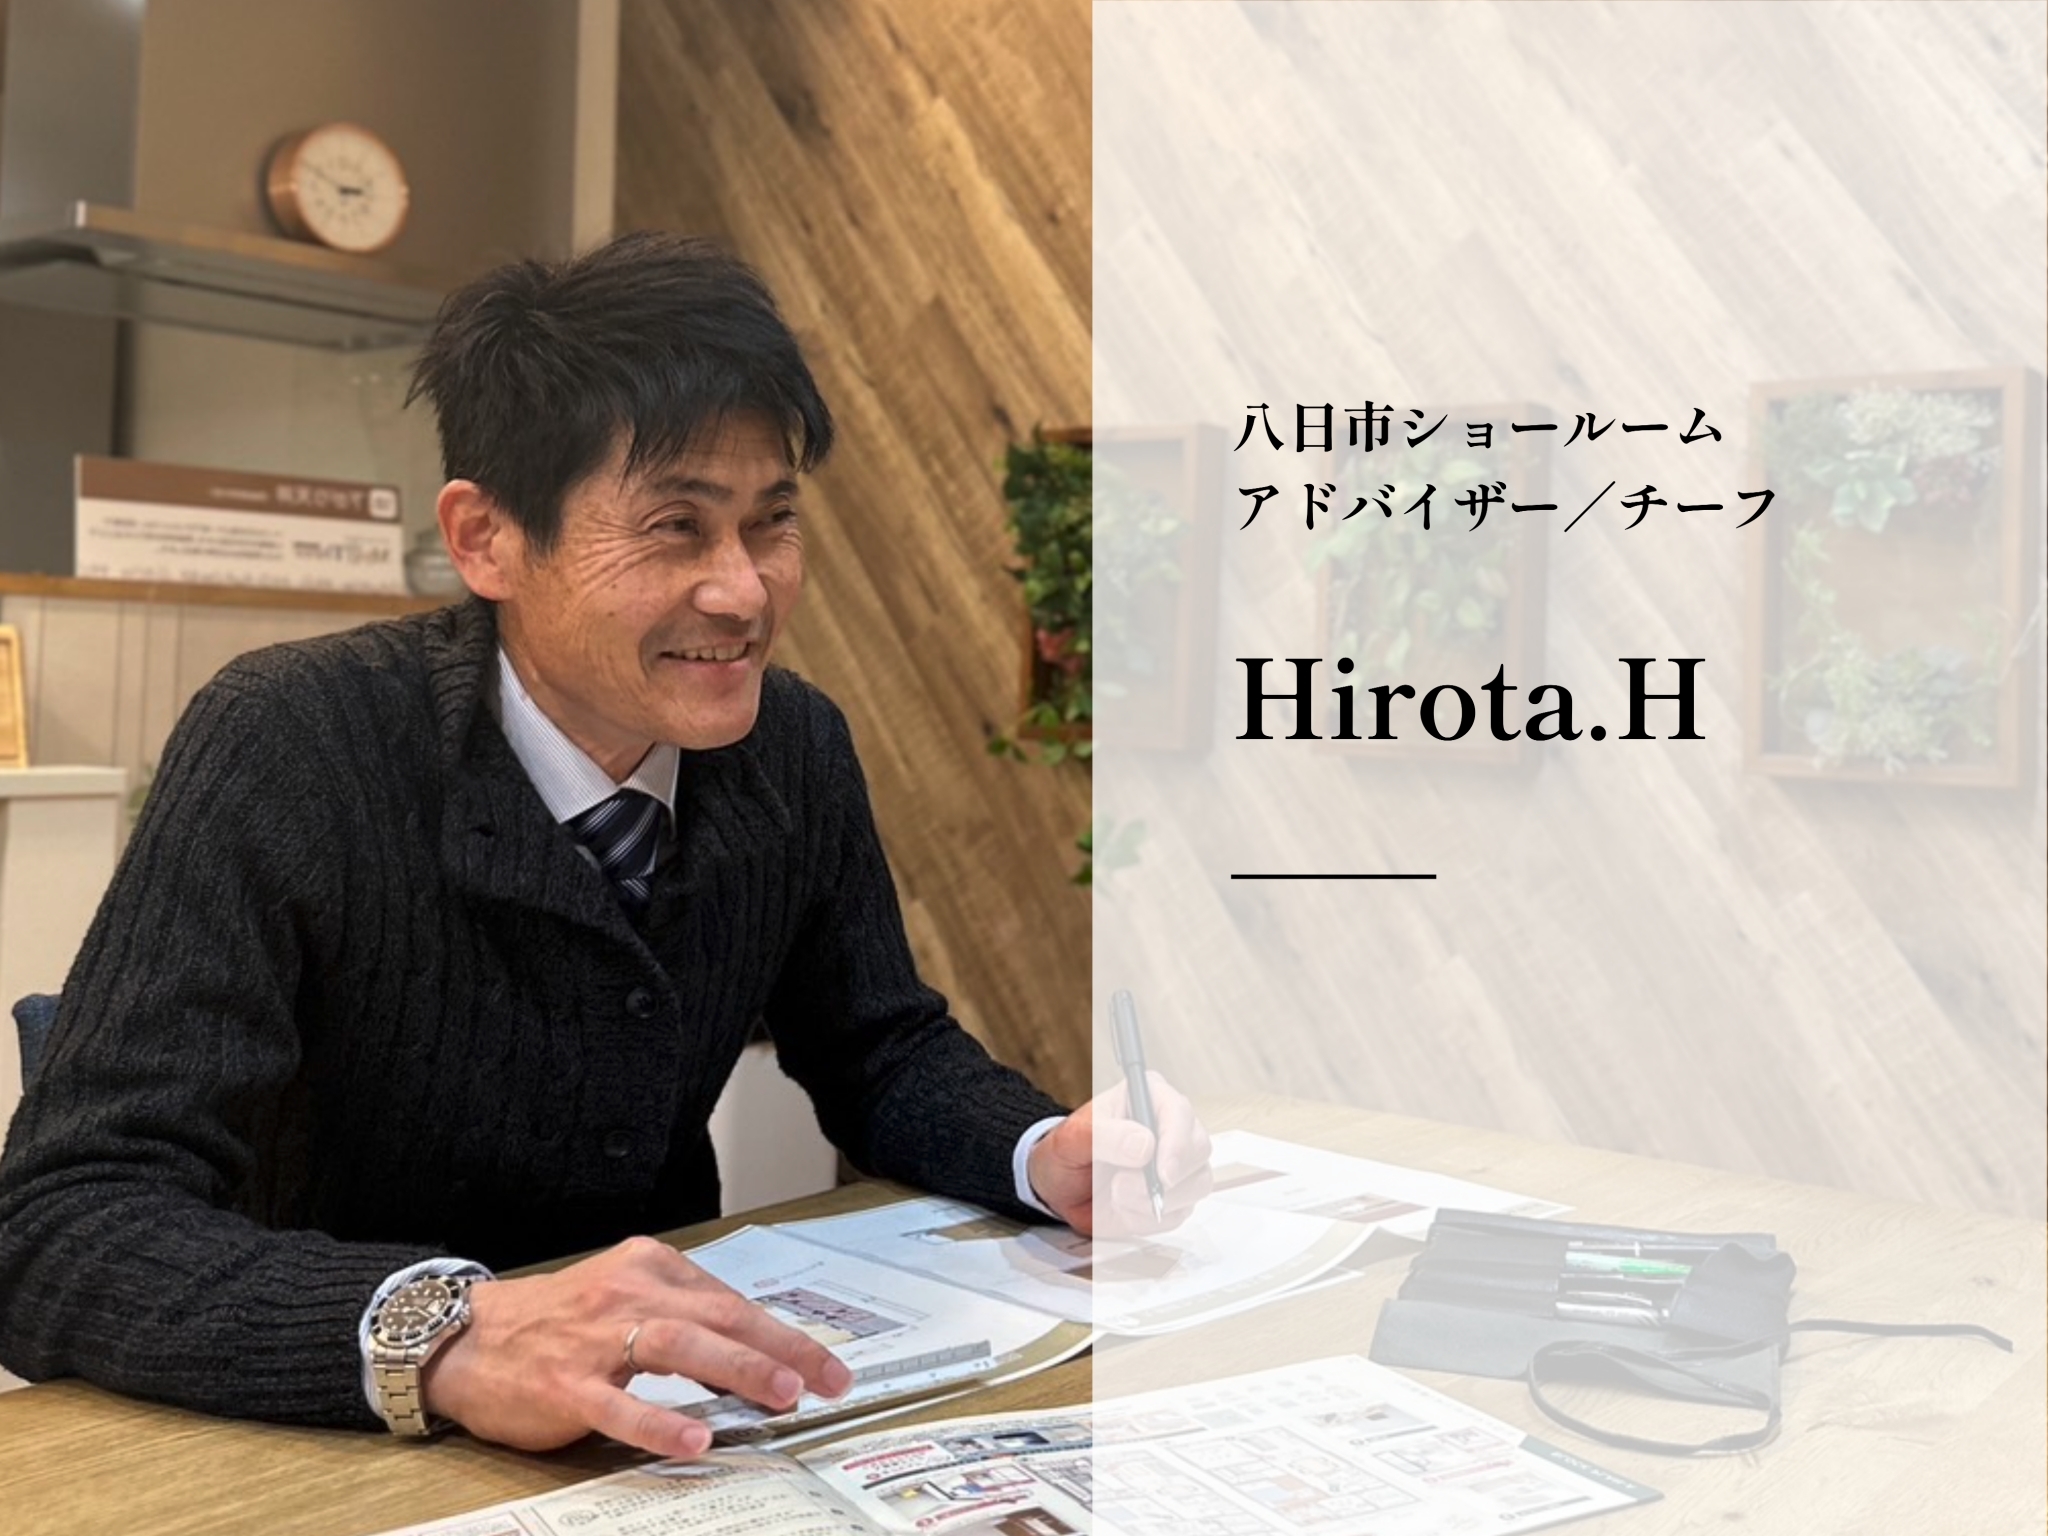 スタッフ紹介 Hirota.H